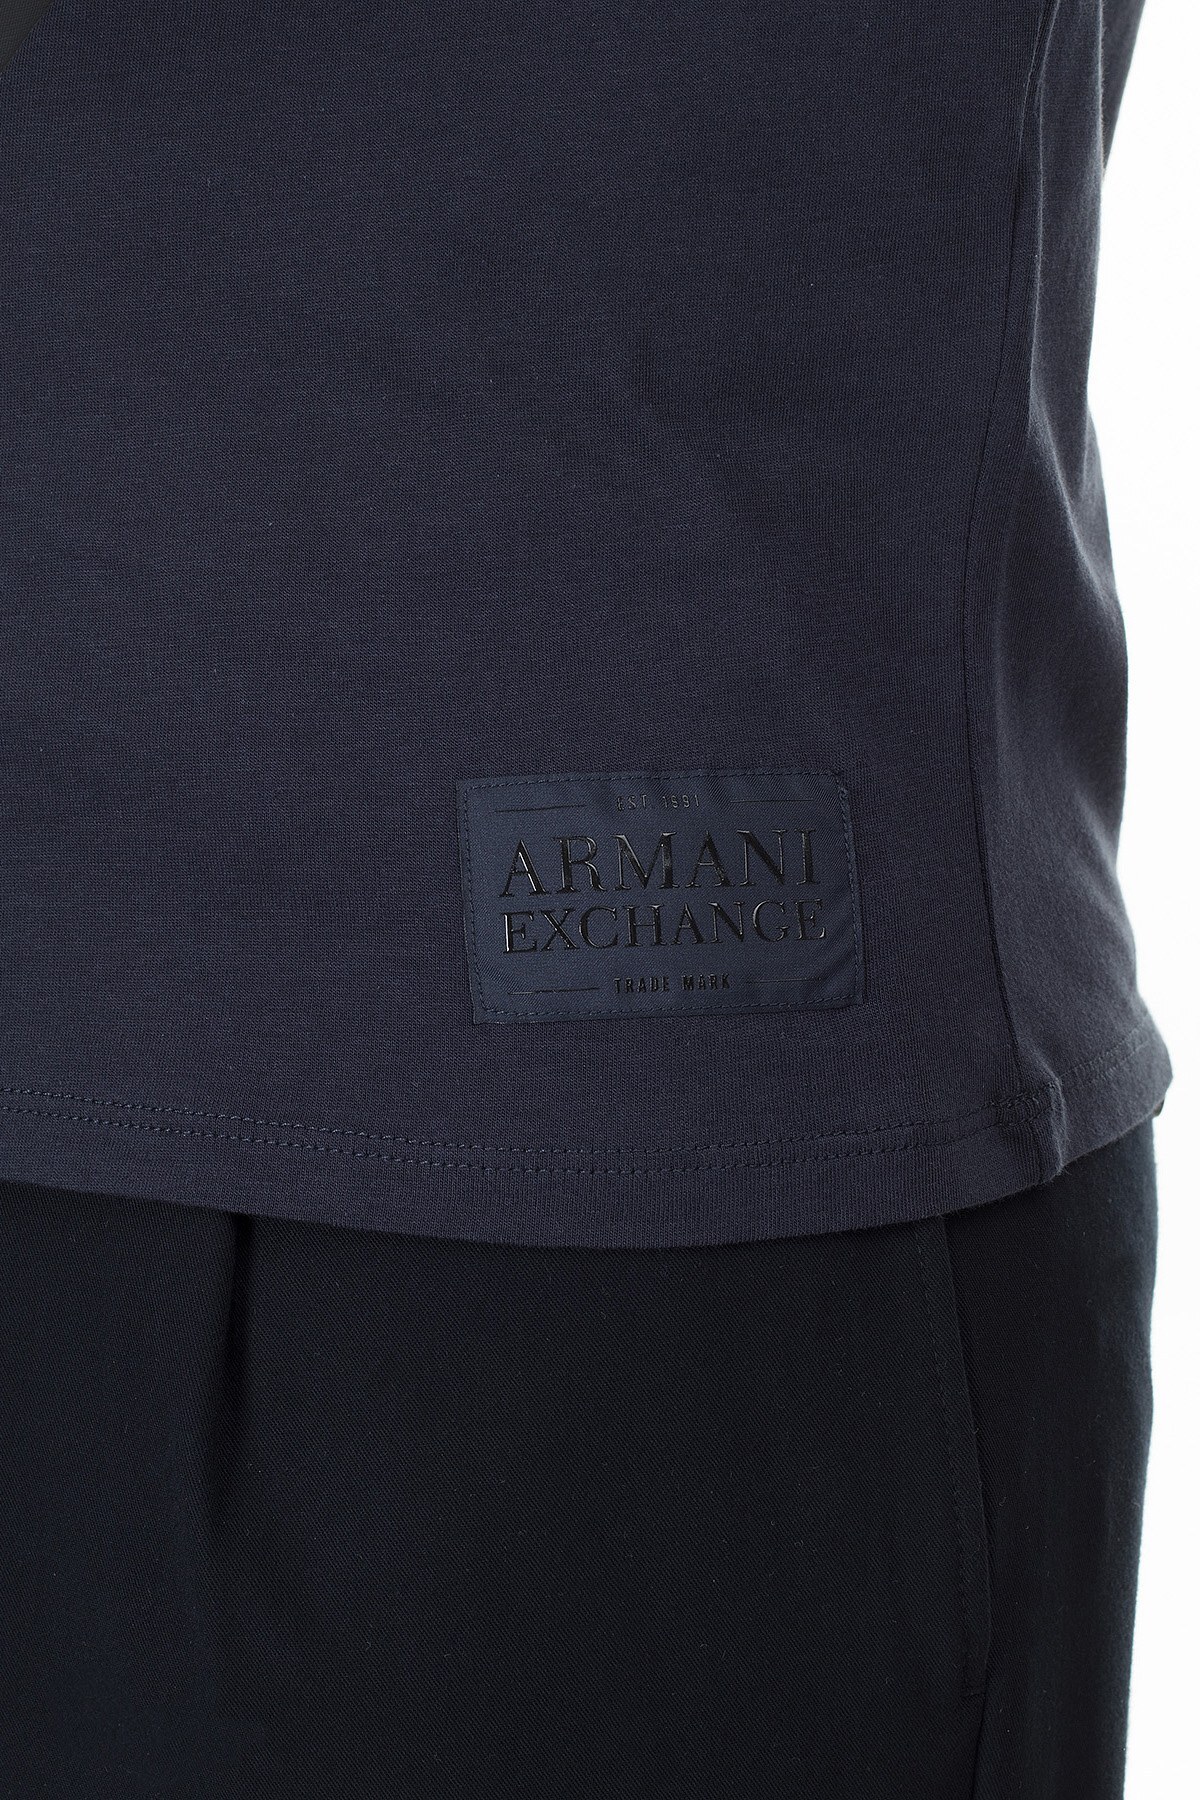 Armani Exchange Slim Fit Baskılı T Shirt Erkek Polo 3HZFFB ZJH4Z 8579 LACİVERT